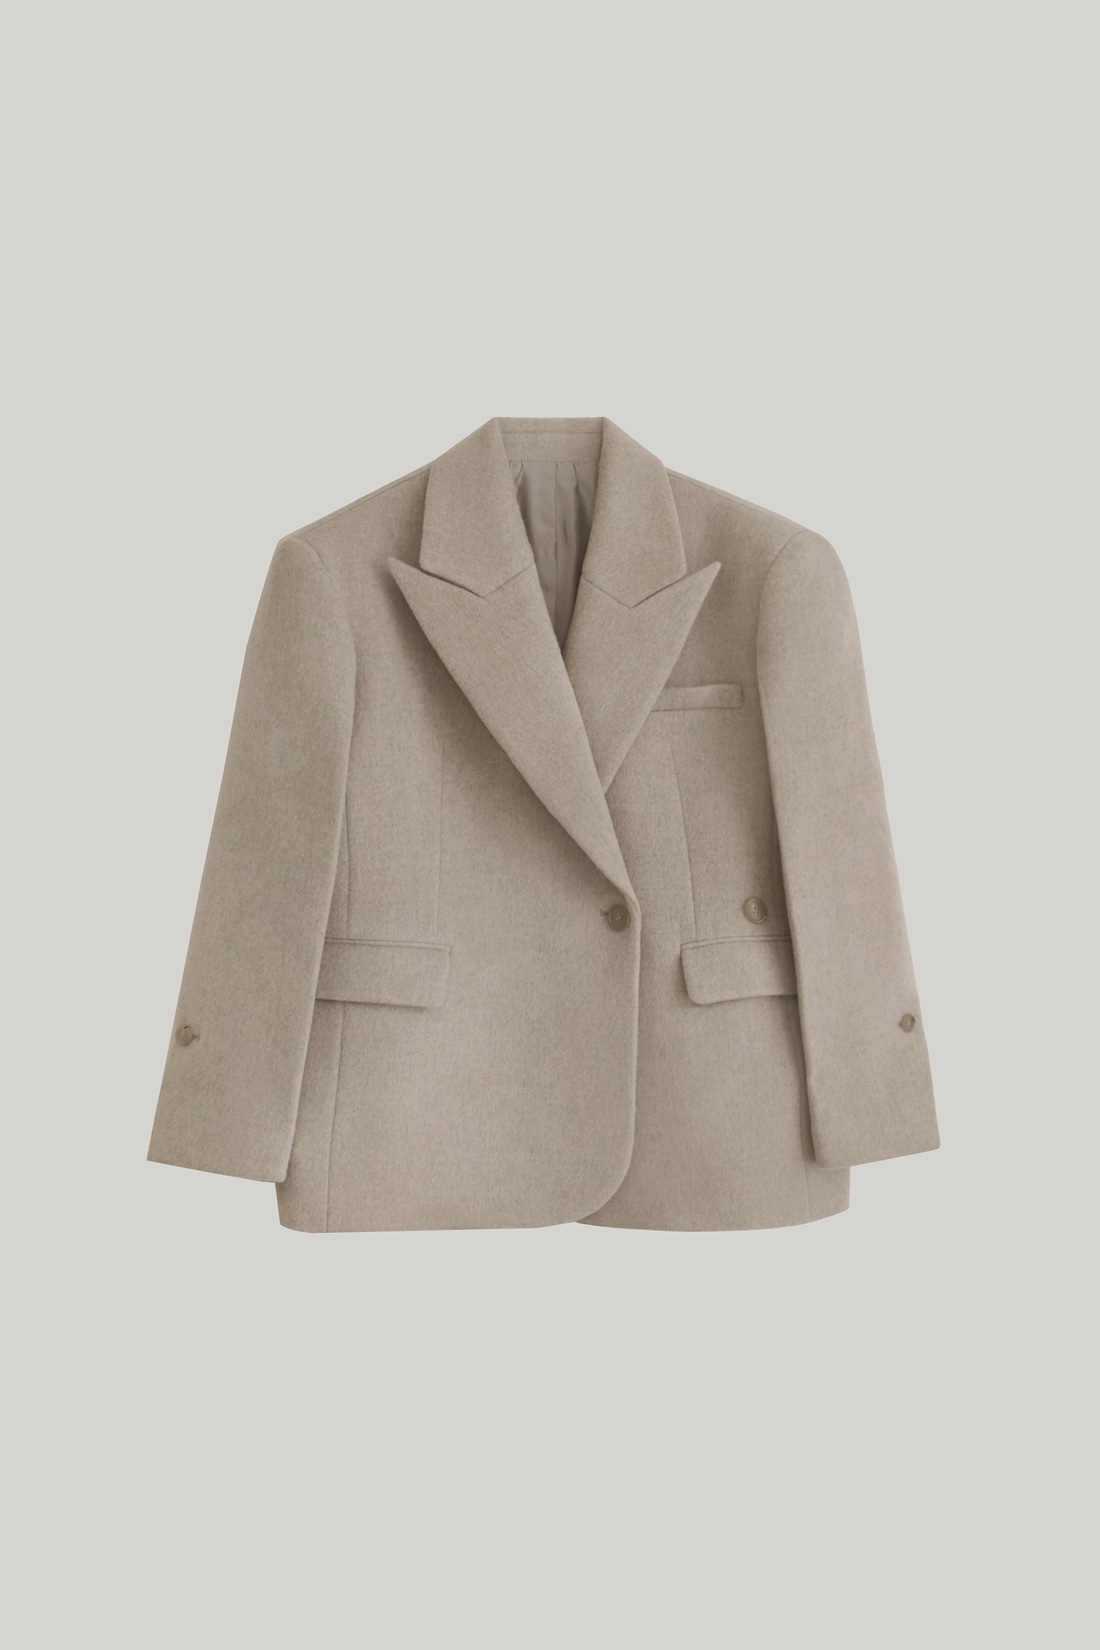 [LIMITED] Prince Cashmere Half Jacket (Melange Beige)